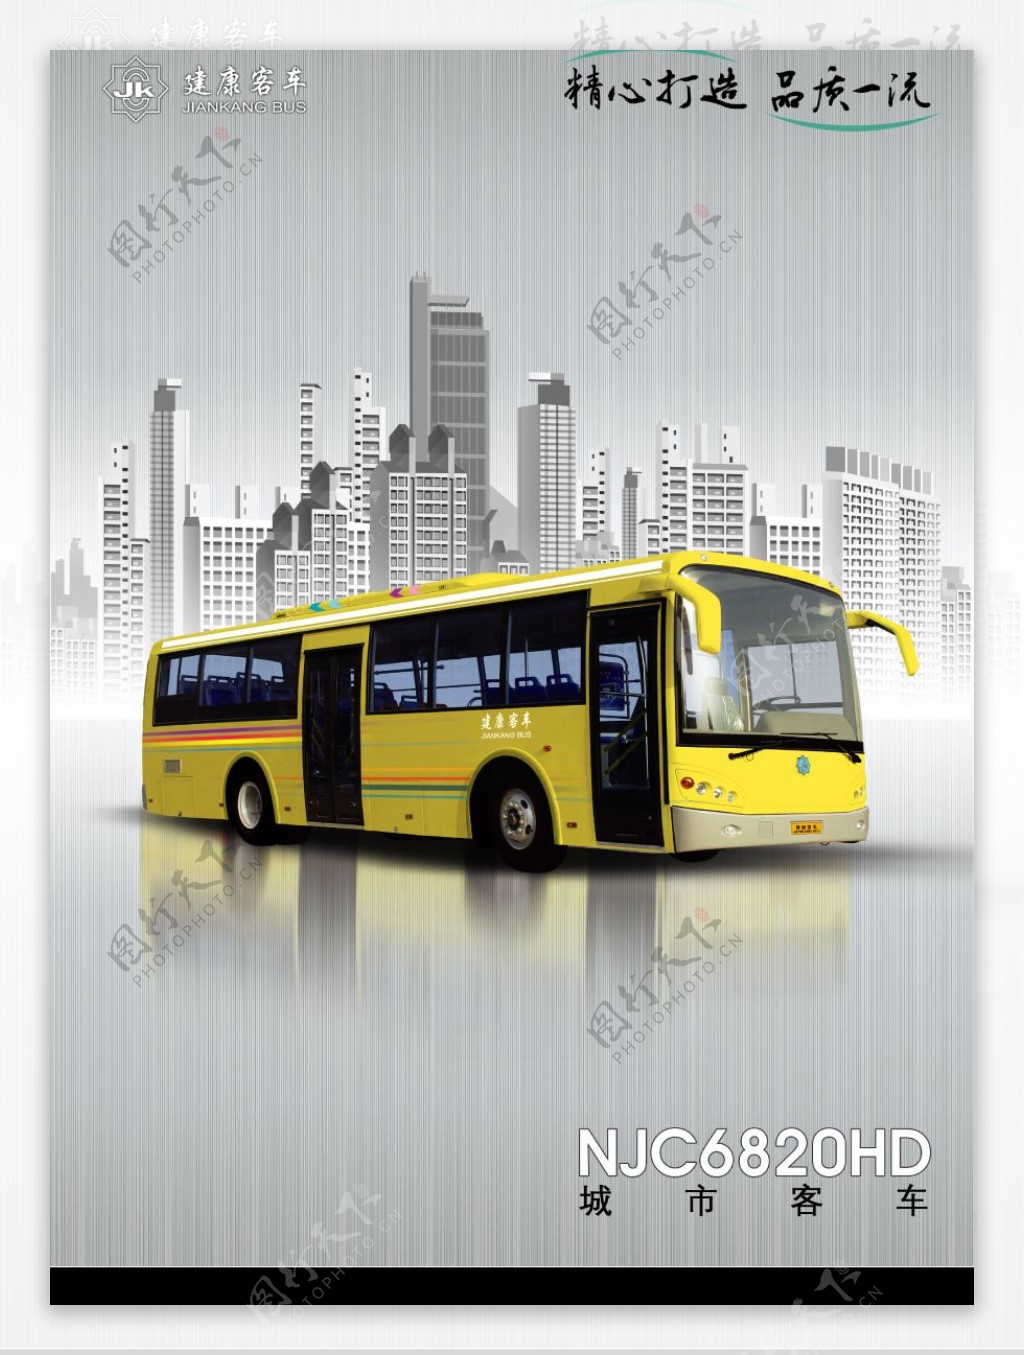 公交巴士广告图片